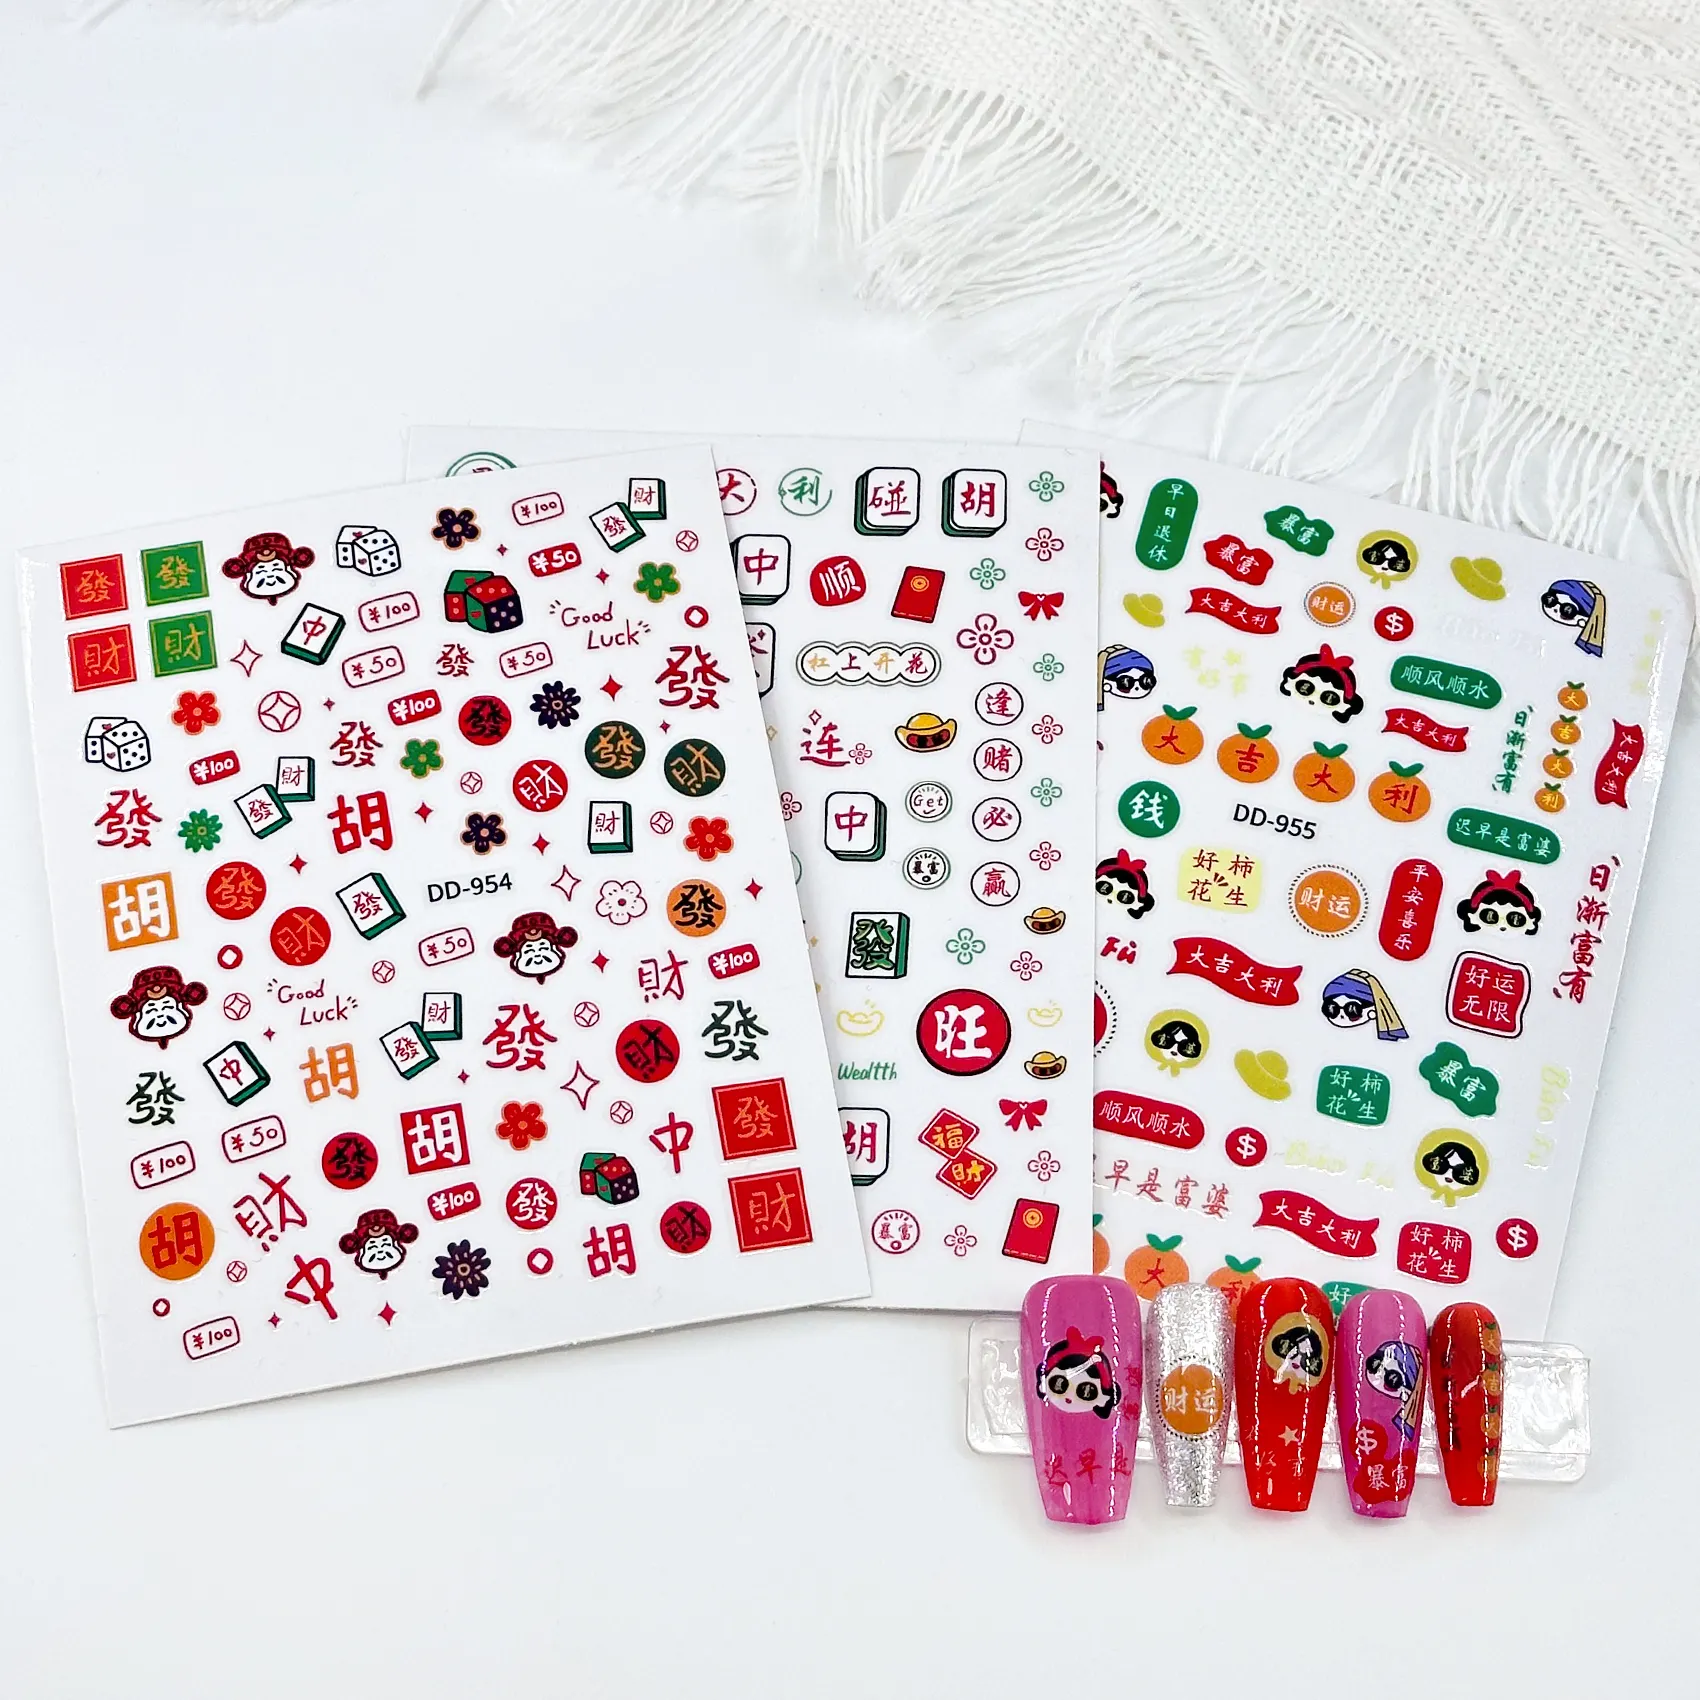 Échantillons gratuits Offre Spéciale Nouvel An Desgin 3D Nail Stickers Mahjong Adhésifs Gel Vernis À Ongles autocollant